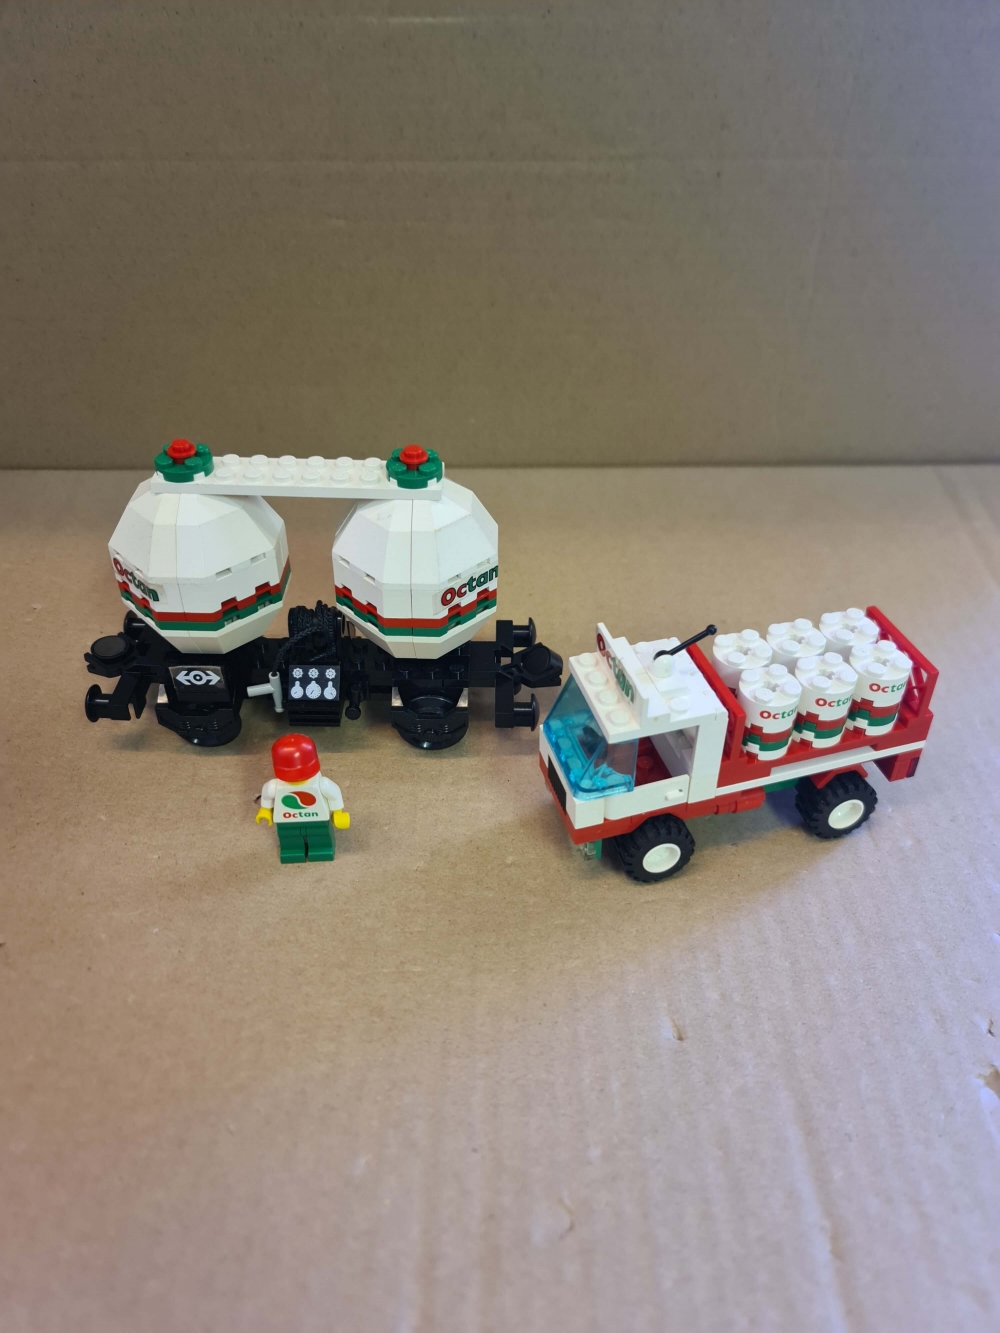 Sett 4537 fra Lego Train : 9v serien.
Komplett uten manual. 
Noe bruksmerker og nyanseforskjeller på hvite brikker.